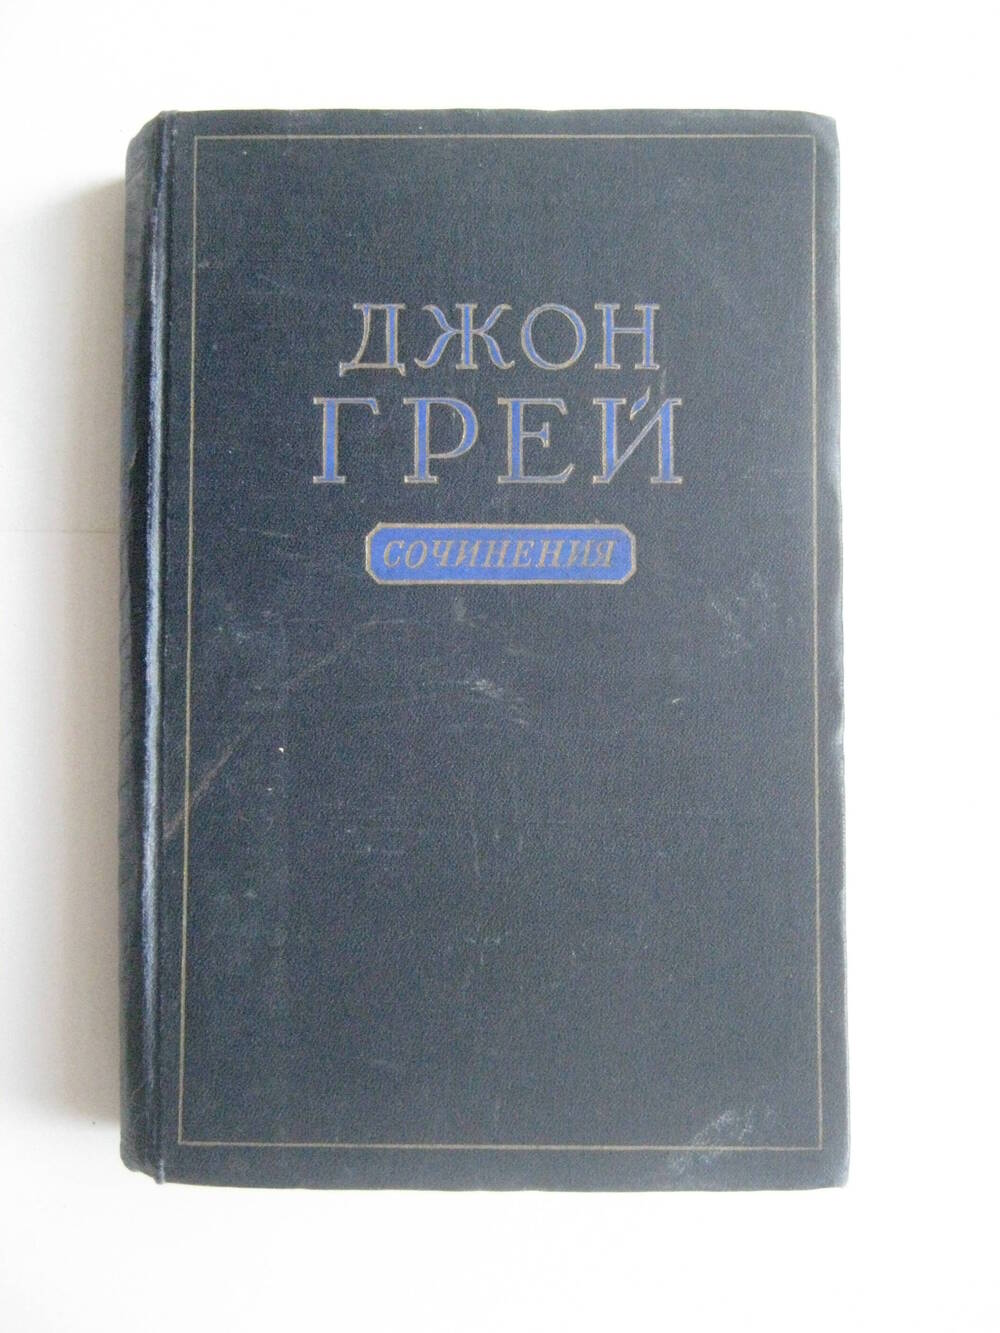 Книга. Грей Джон. Сочинения. – М.: Политиздат, 1955.